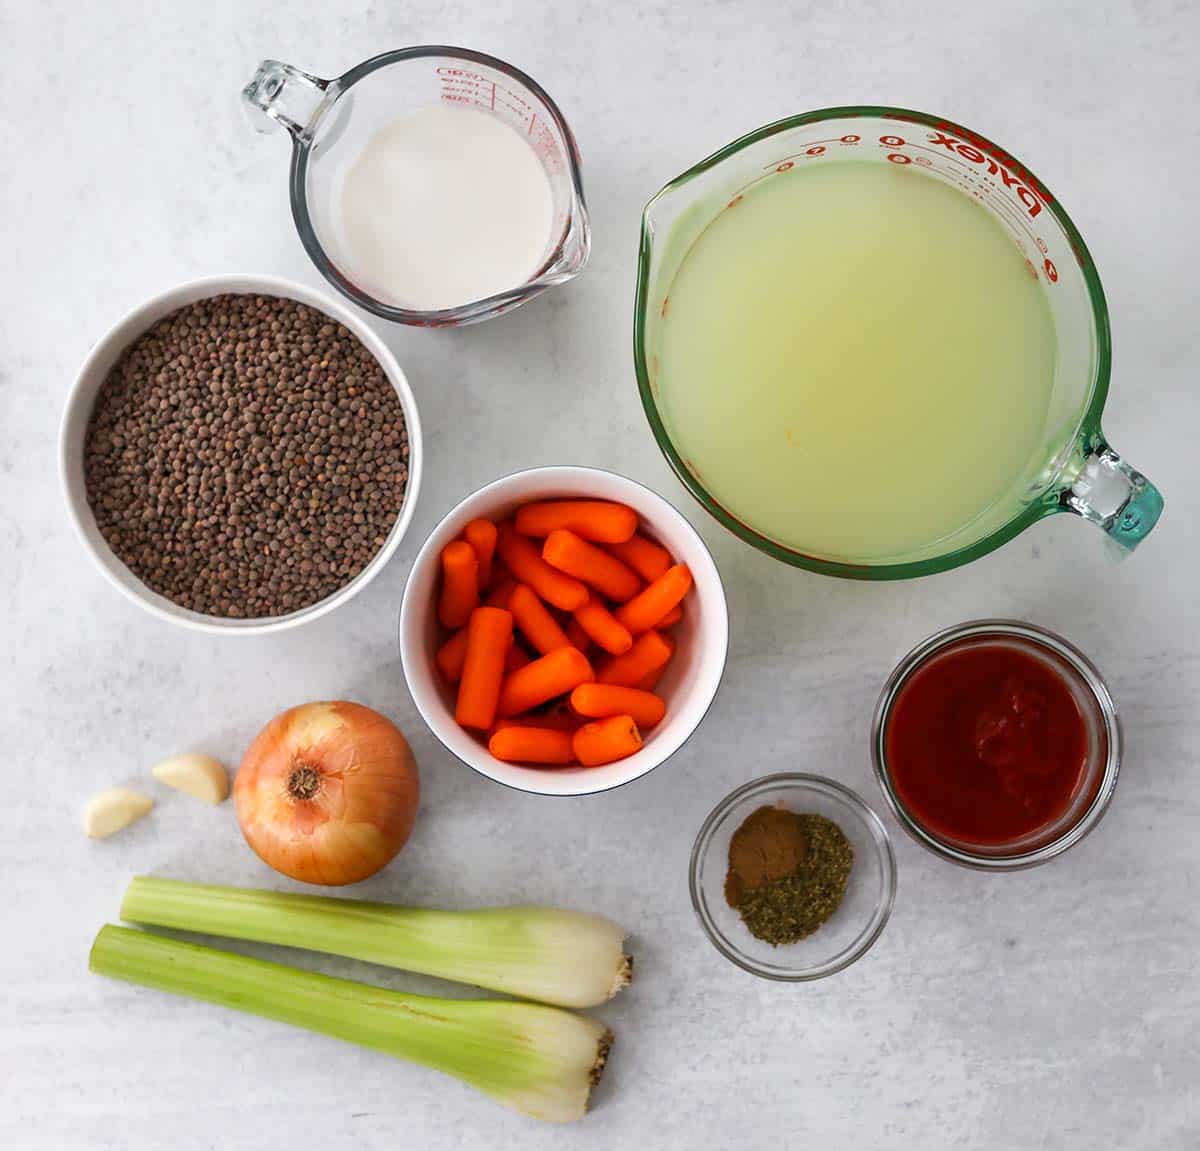 Ingredients for crockpot lentil soup. 